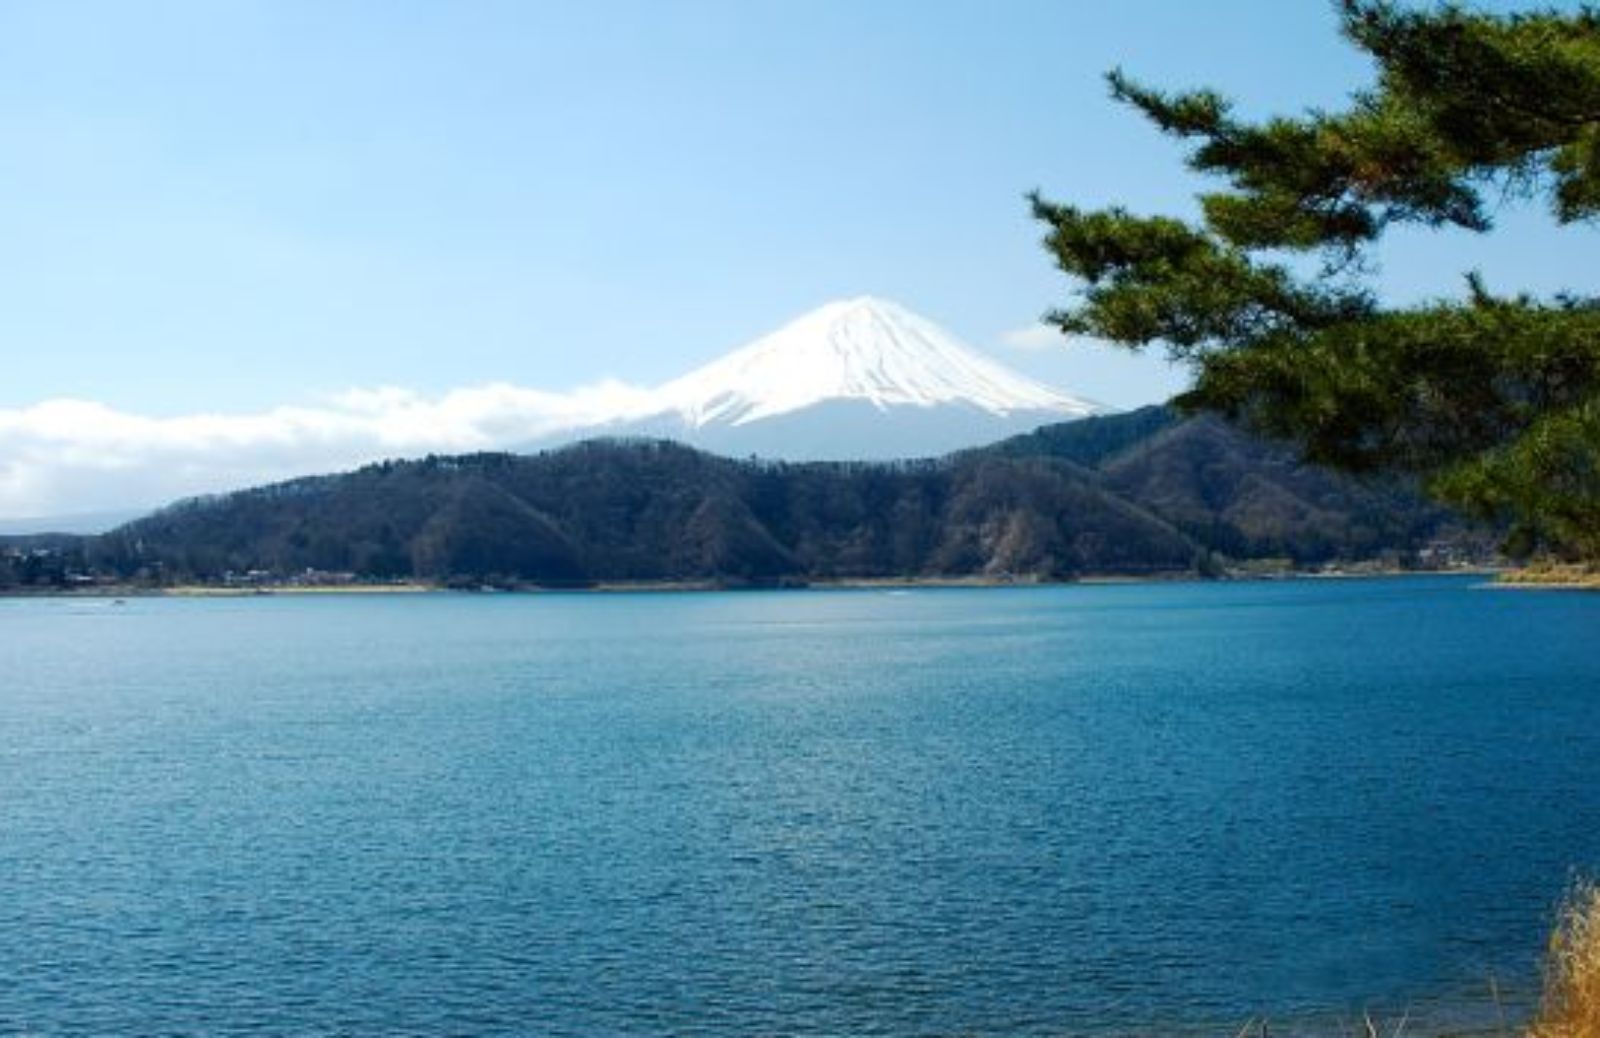 Grave situazione ambientale sul monte Fuji